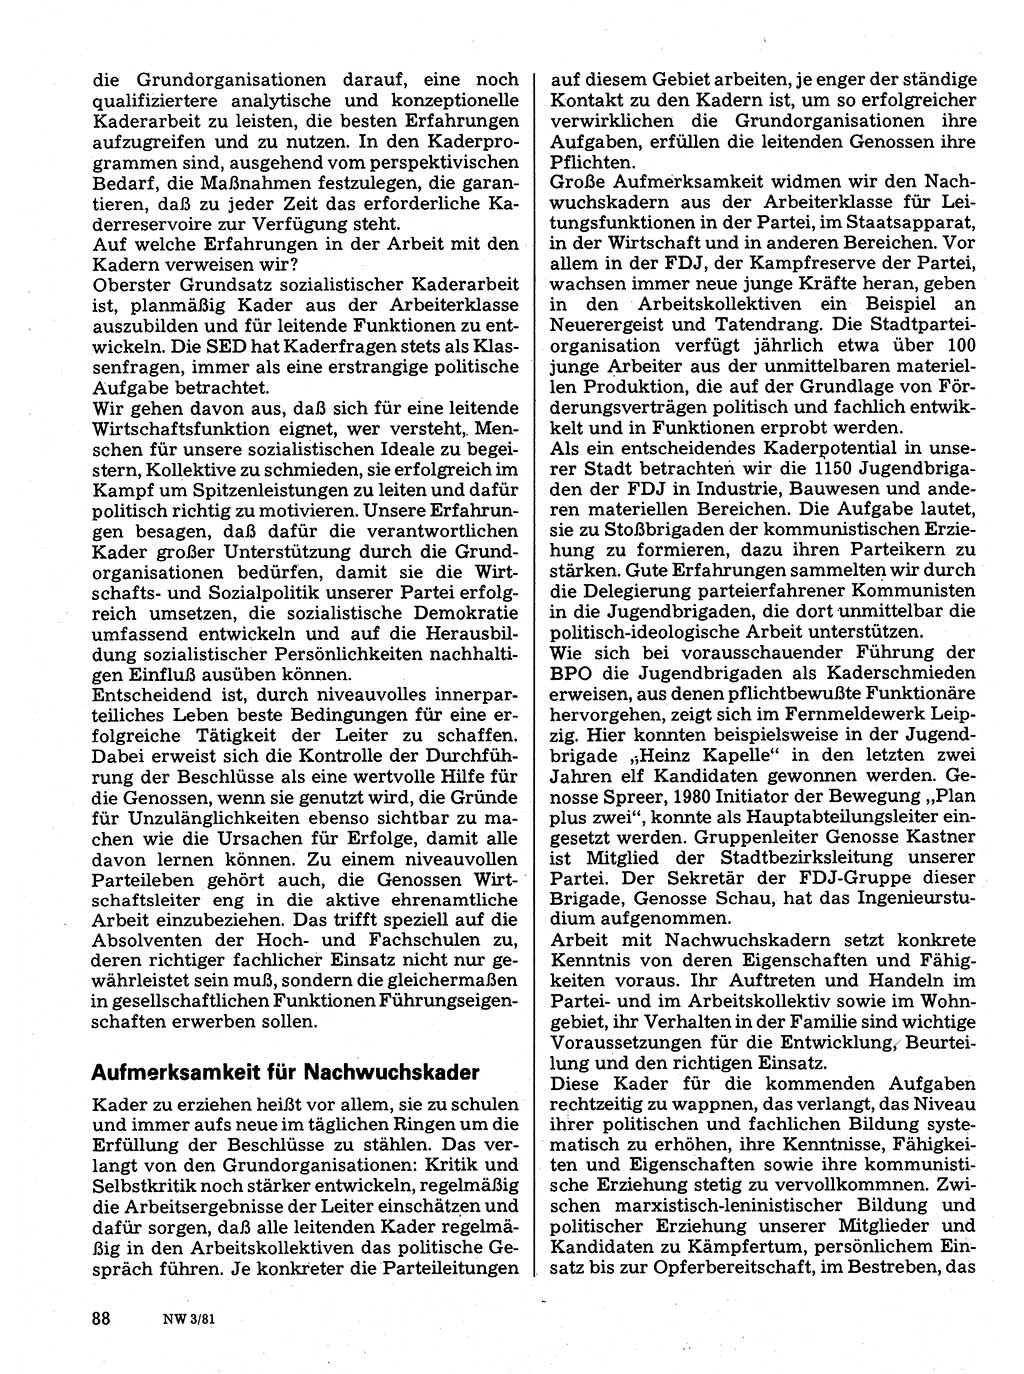 Neuer Weg (NW), Organ des Zentralkomitees (ZK) der SED (Sozialistische Einheitspartei Deutschlands) für Fragen des Parteilebens, 36. Jahrgang [Deutsche Demokratische Republik (DDR)] 1981, Seite 88 (NW ZK SED DDR 1981, S. 88)